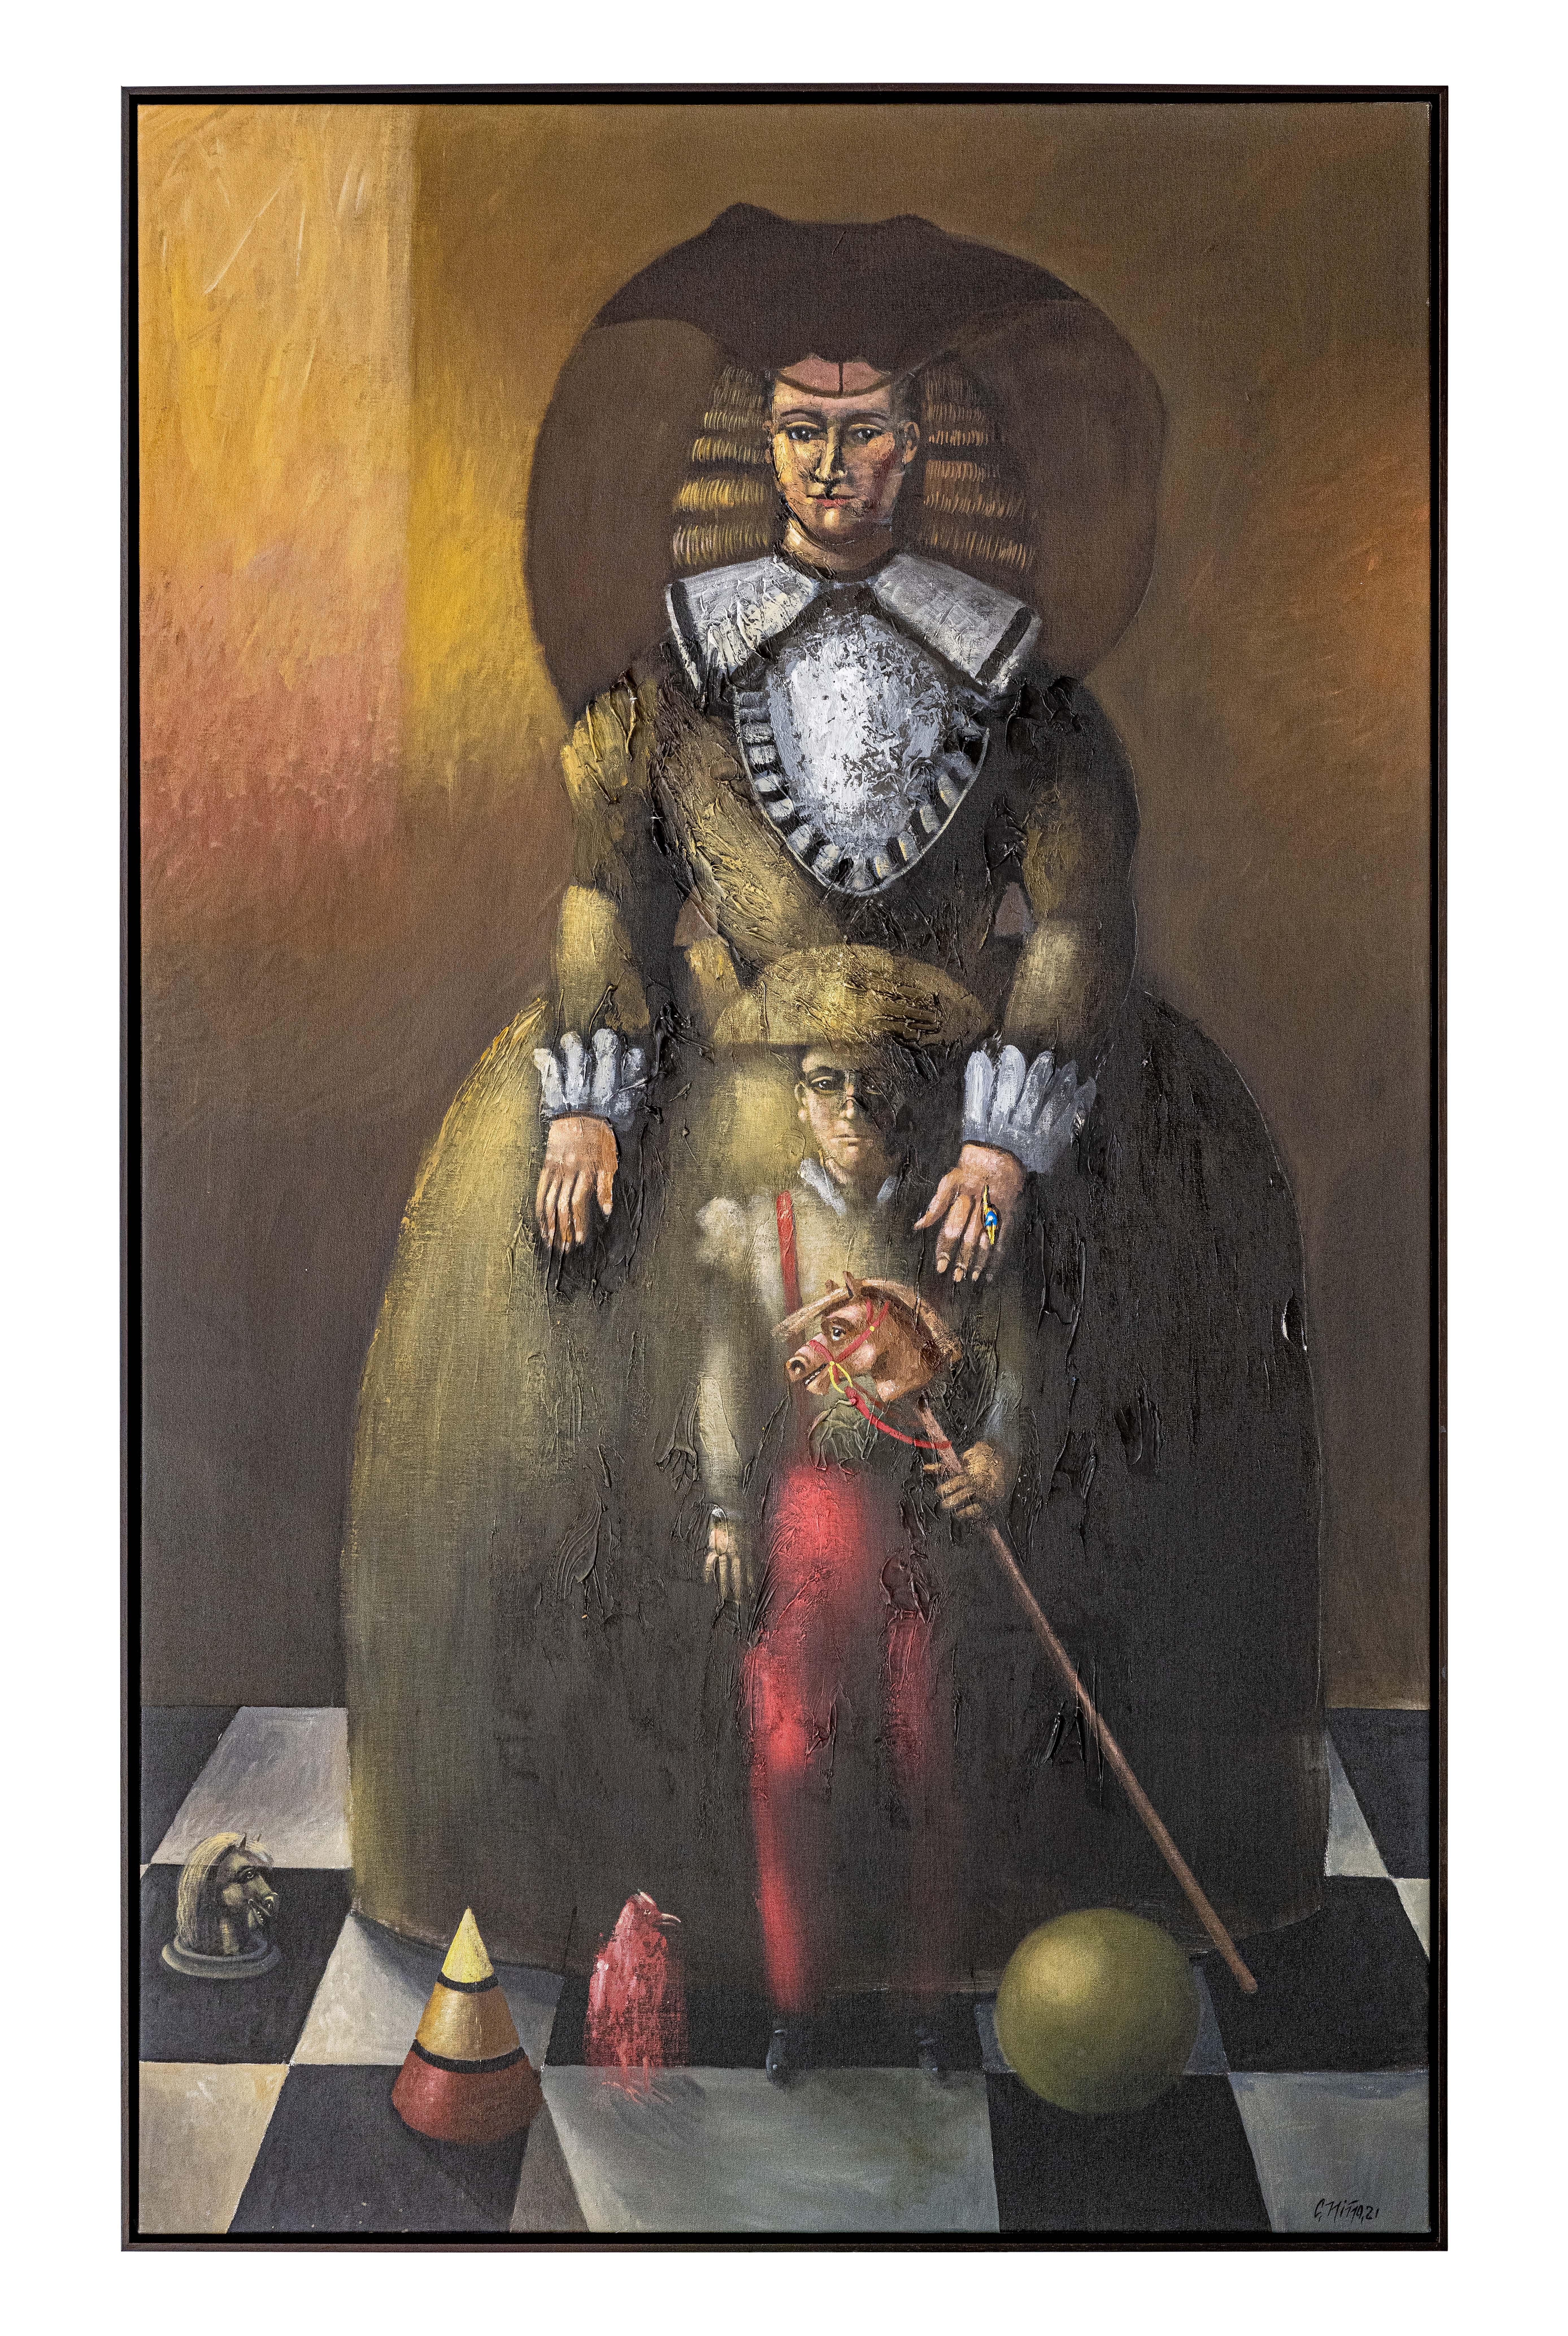 Carmelo Nio, El Primognito, 2021, 200 x 120 cm, 78,7 x 47,2 pouces. - Painting de Carmelo Niño